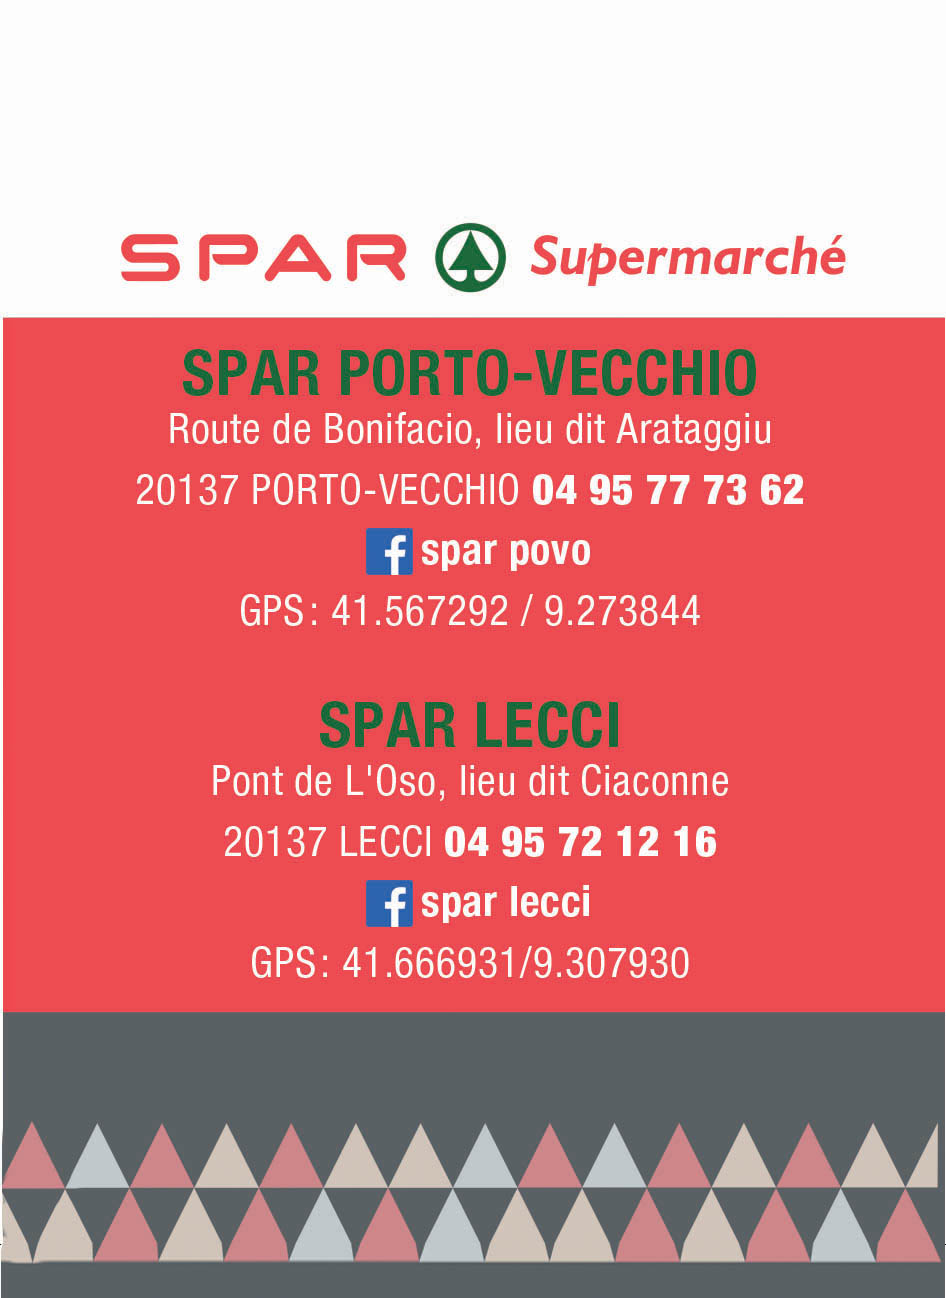 SPAR PORTO-VECCHIO & LECCI